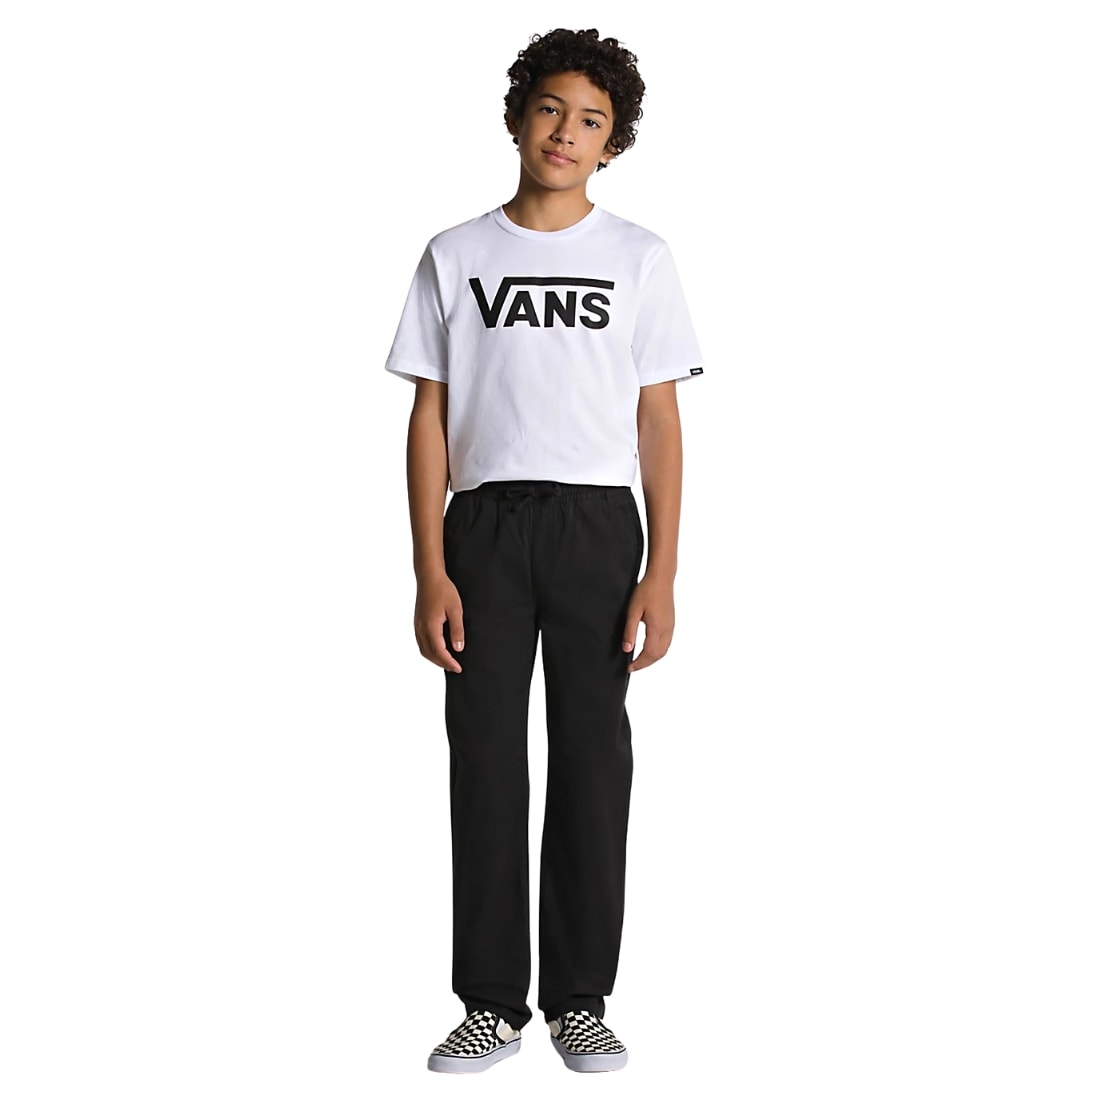 Vans Kids Range Elastic Waist Trousers - Black - Boys Chino Pants/Trousers by Vans